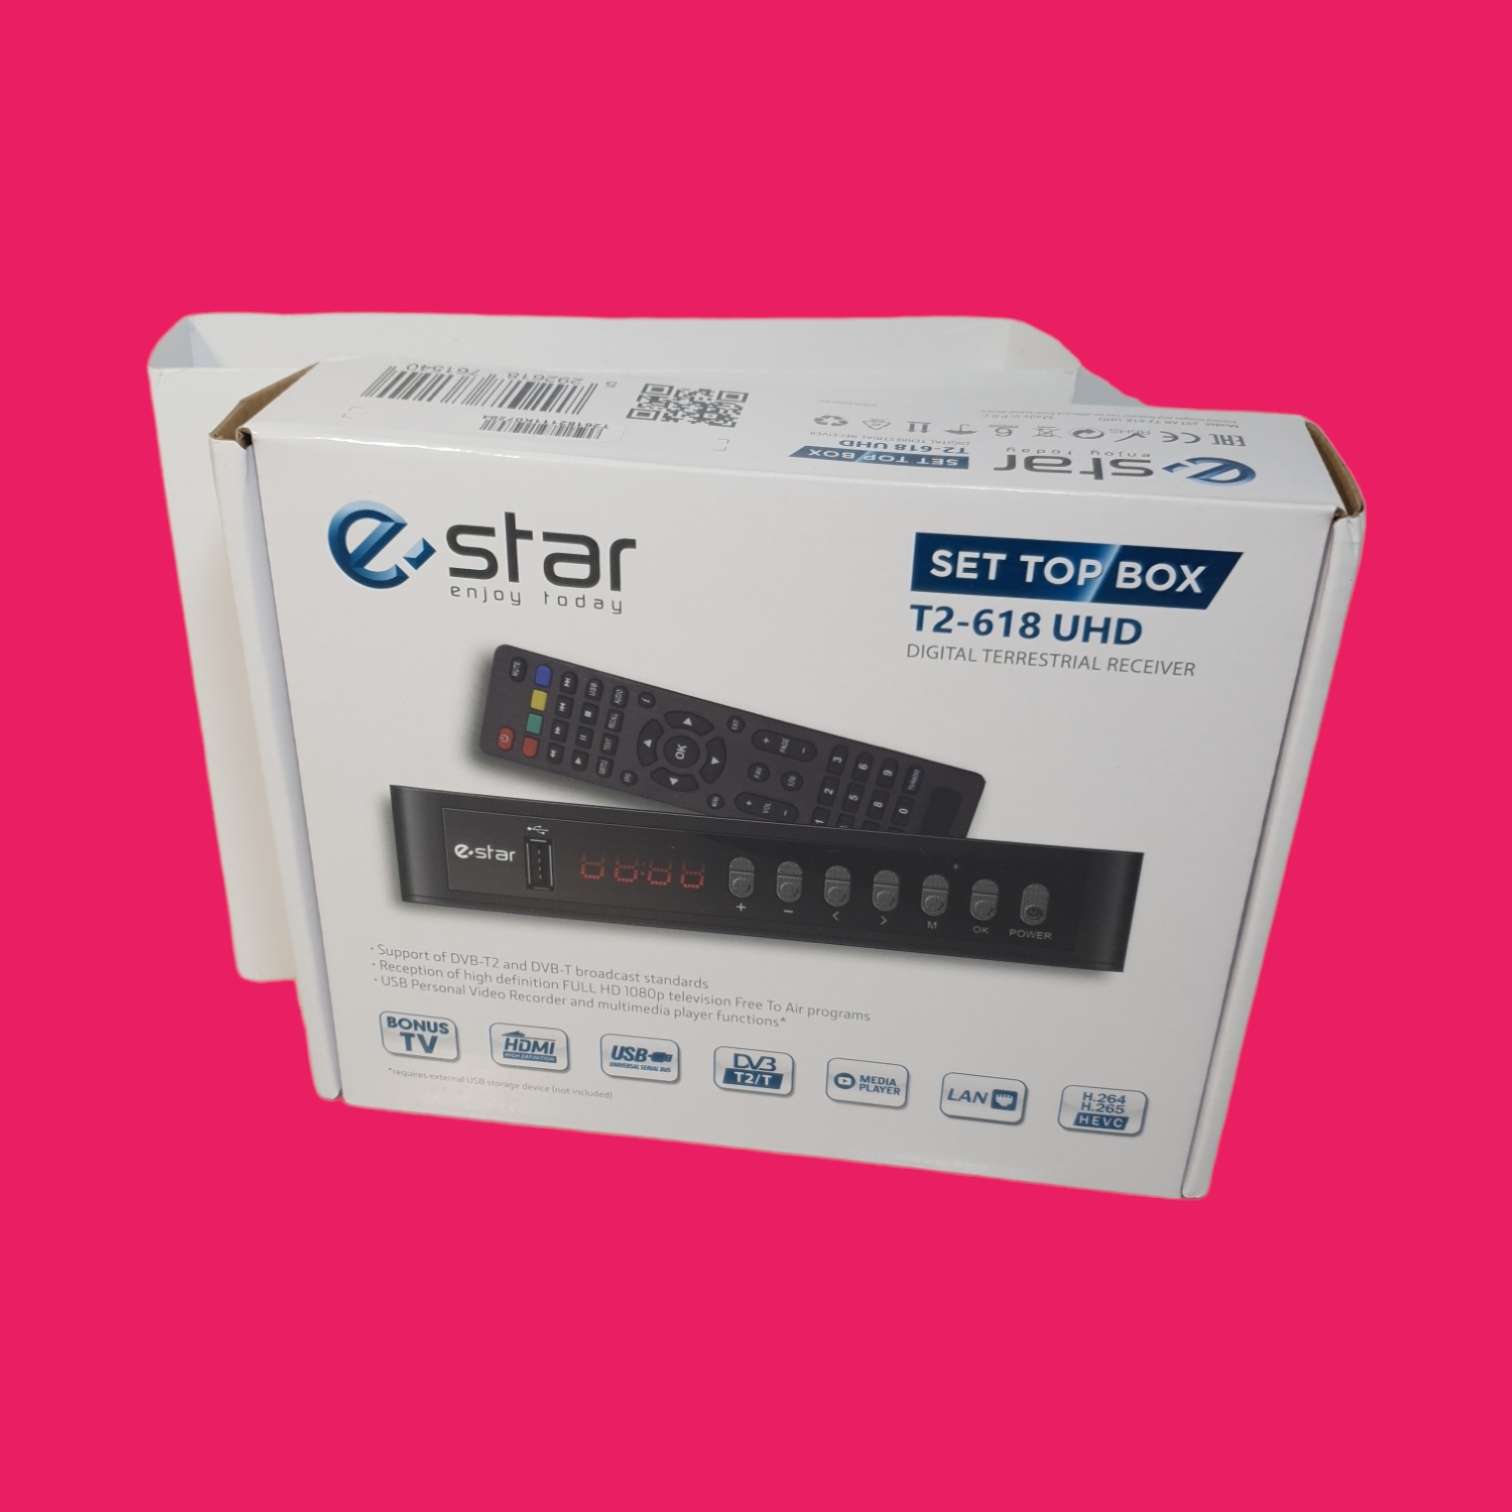 eSTAR T2 618 UHD Decodificador/Receptor Digital Terrestre DVB-T/T2 FullHD